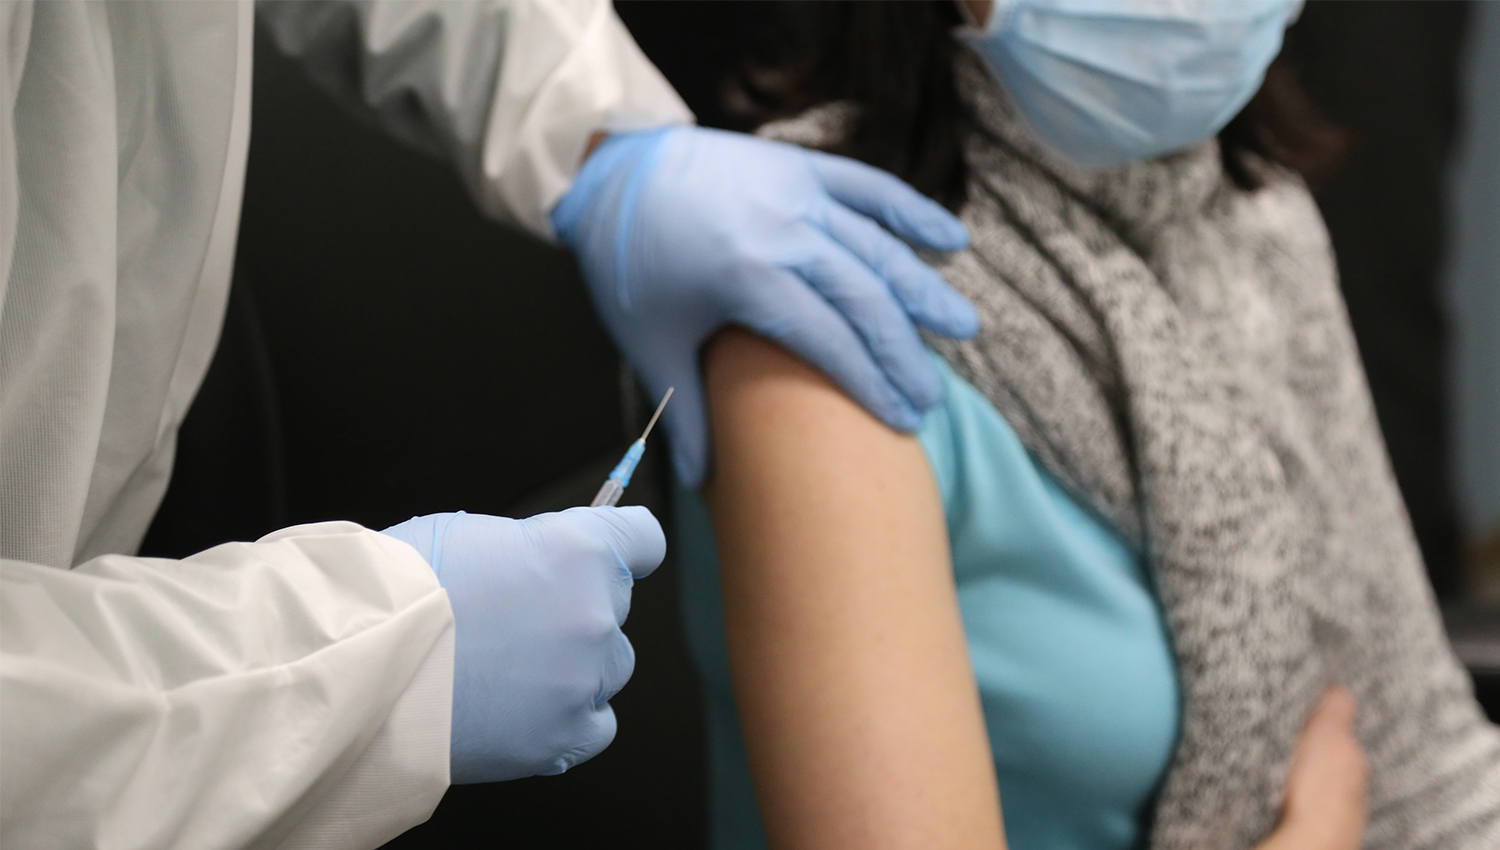 Centenas de doses de vacinas do CHTS foram danificadas